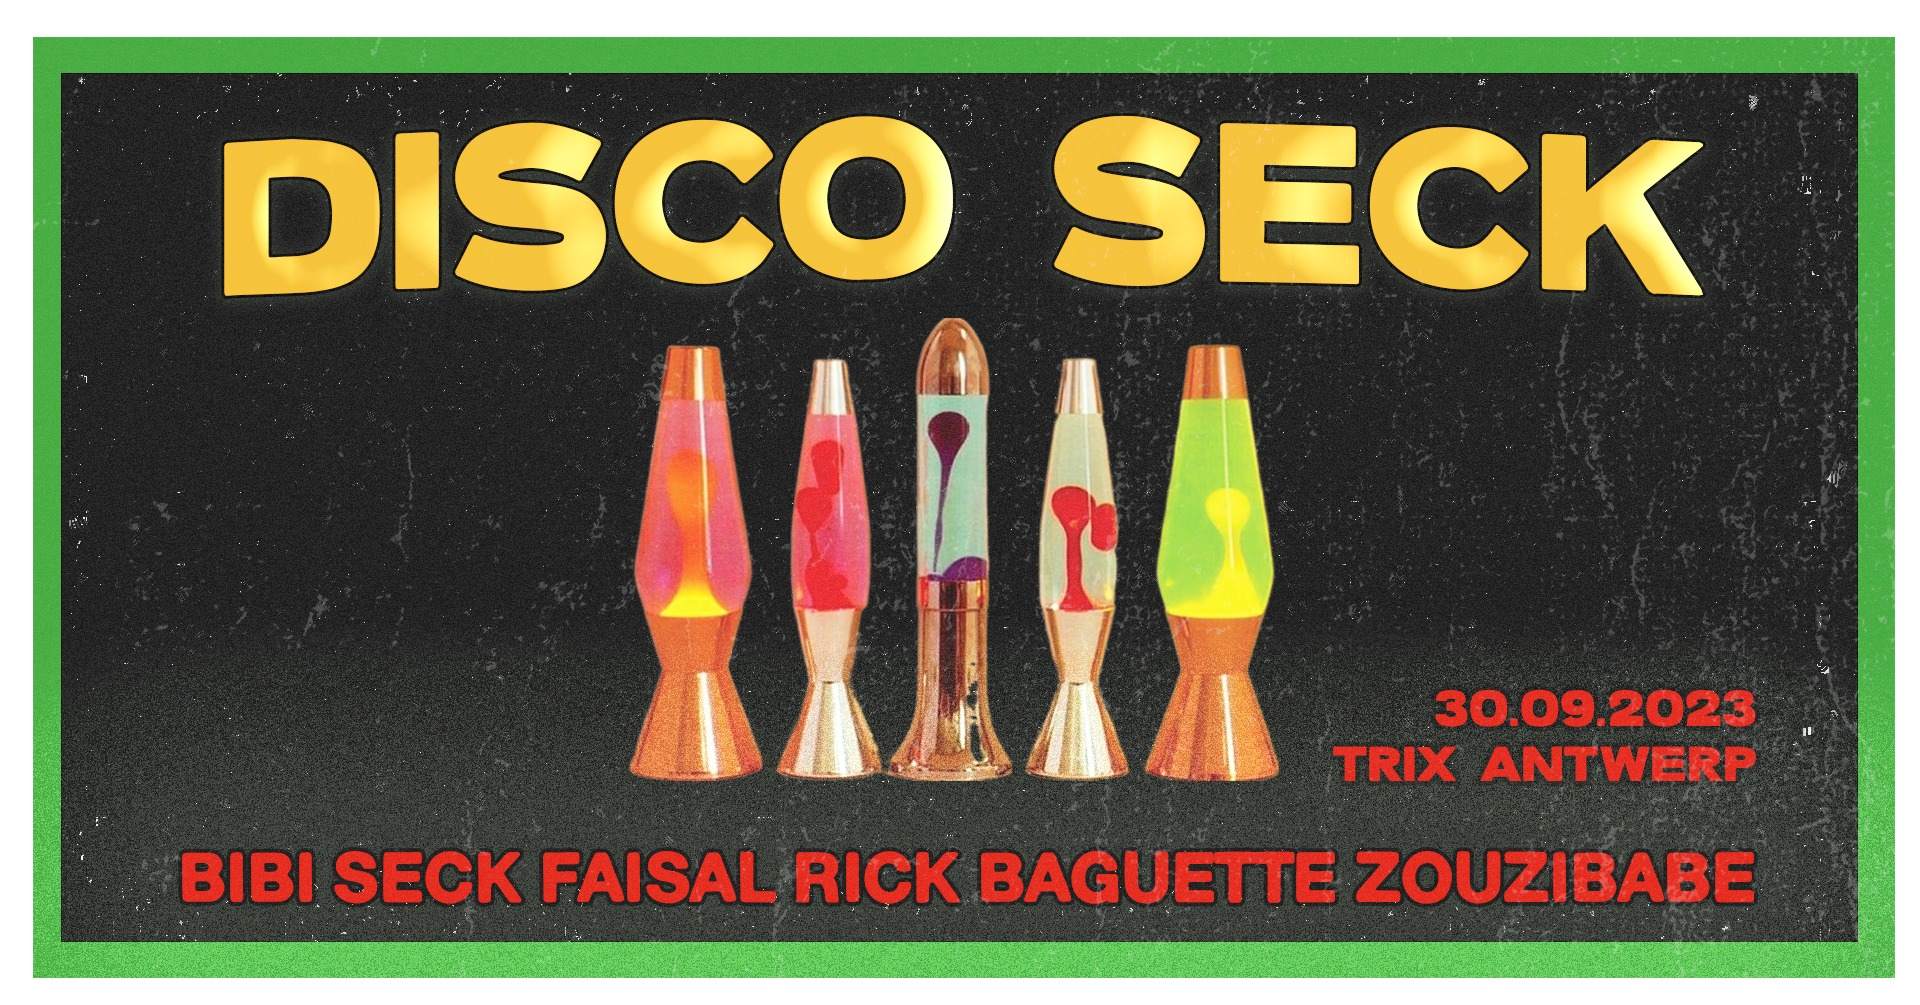 DISCO SECK at TRIX - フライヤー表